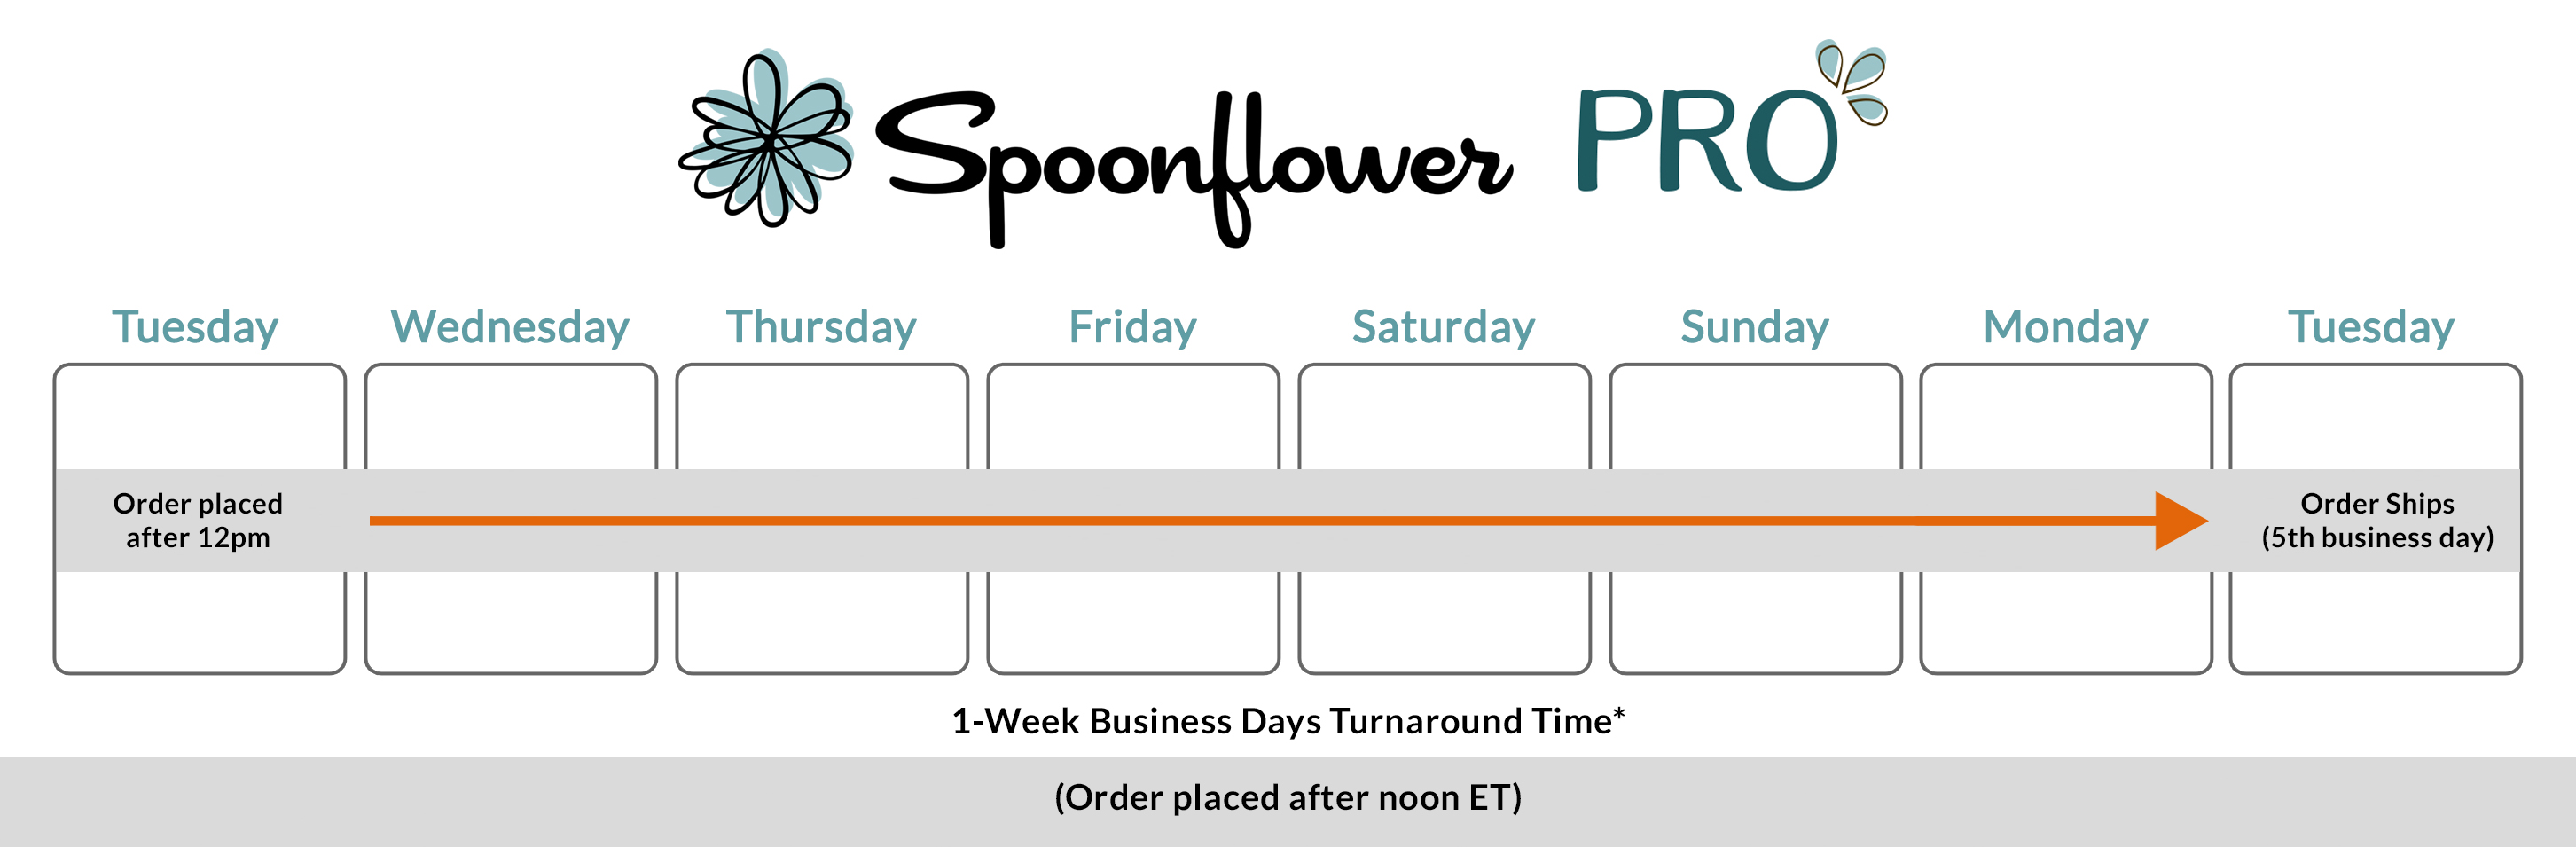 PRO_Calendar_5_Business_Days.jpg